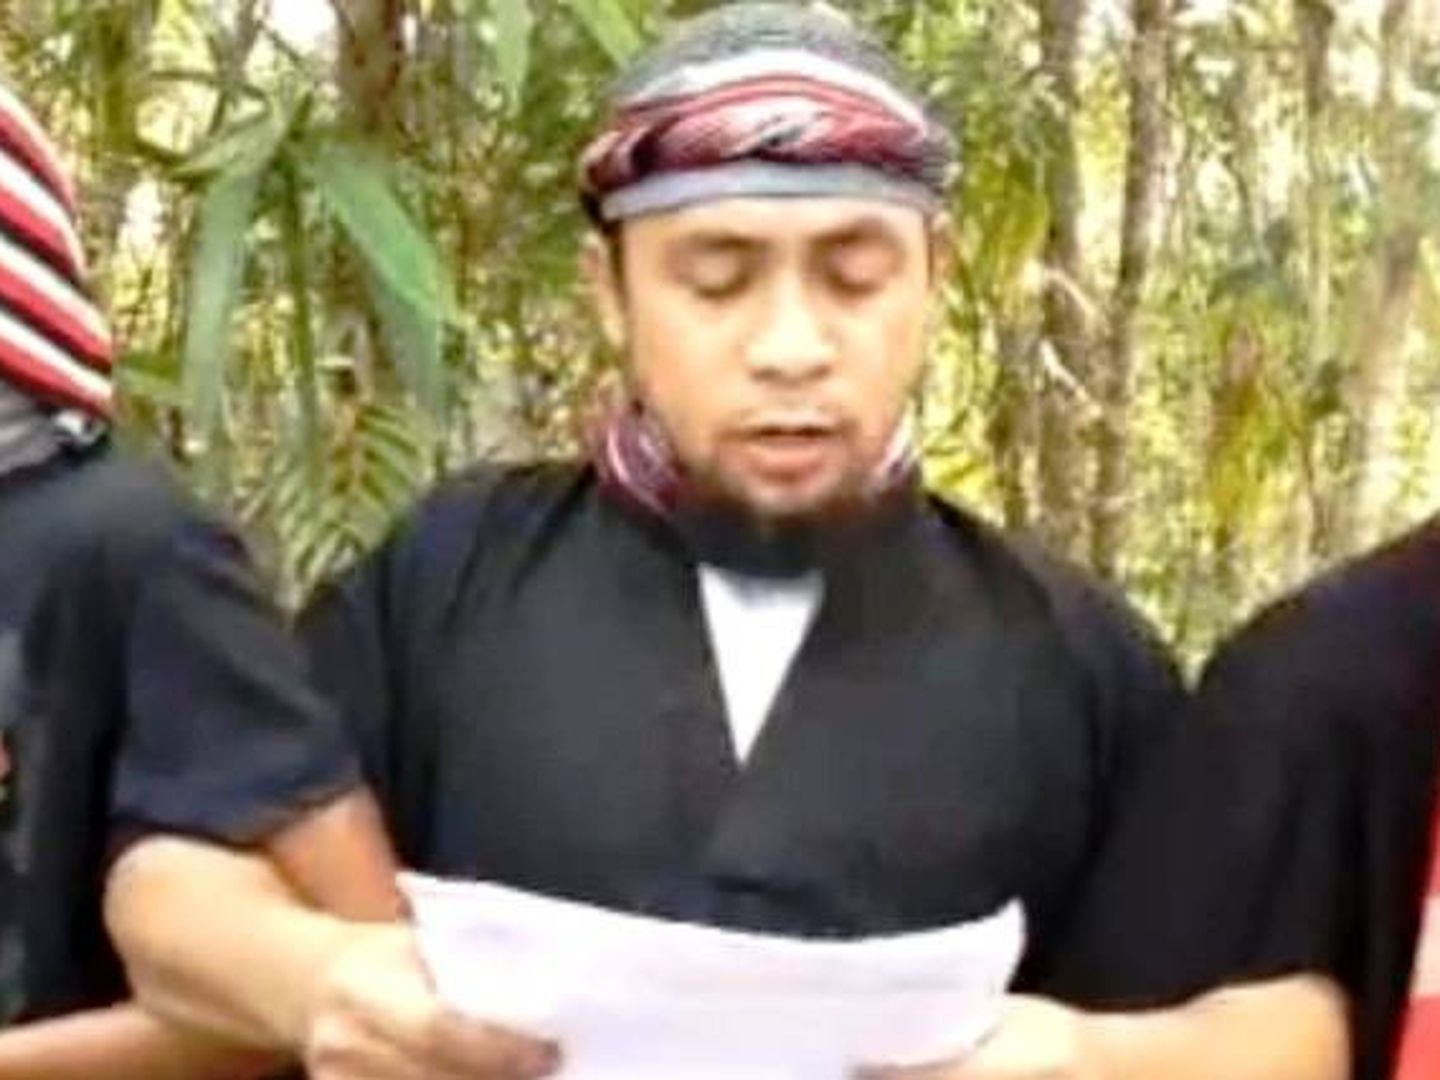 Captura de pantalla del video en el que Isnilon Hapilon, líder de Abu Sayyaf, jura lealtad al ISIS